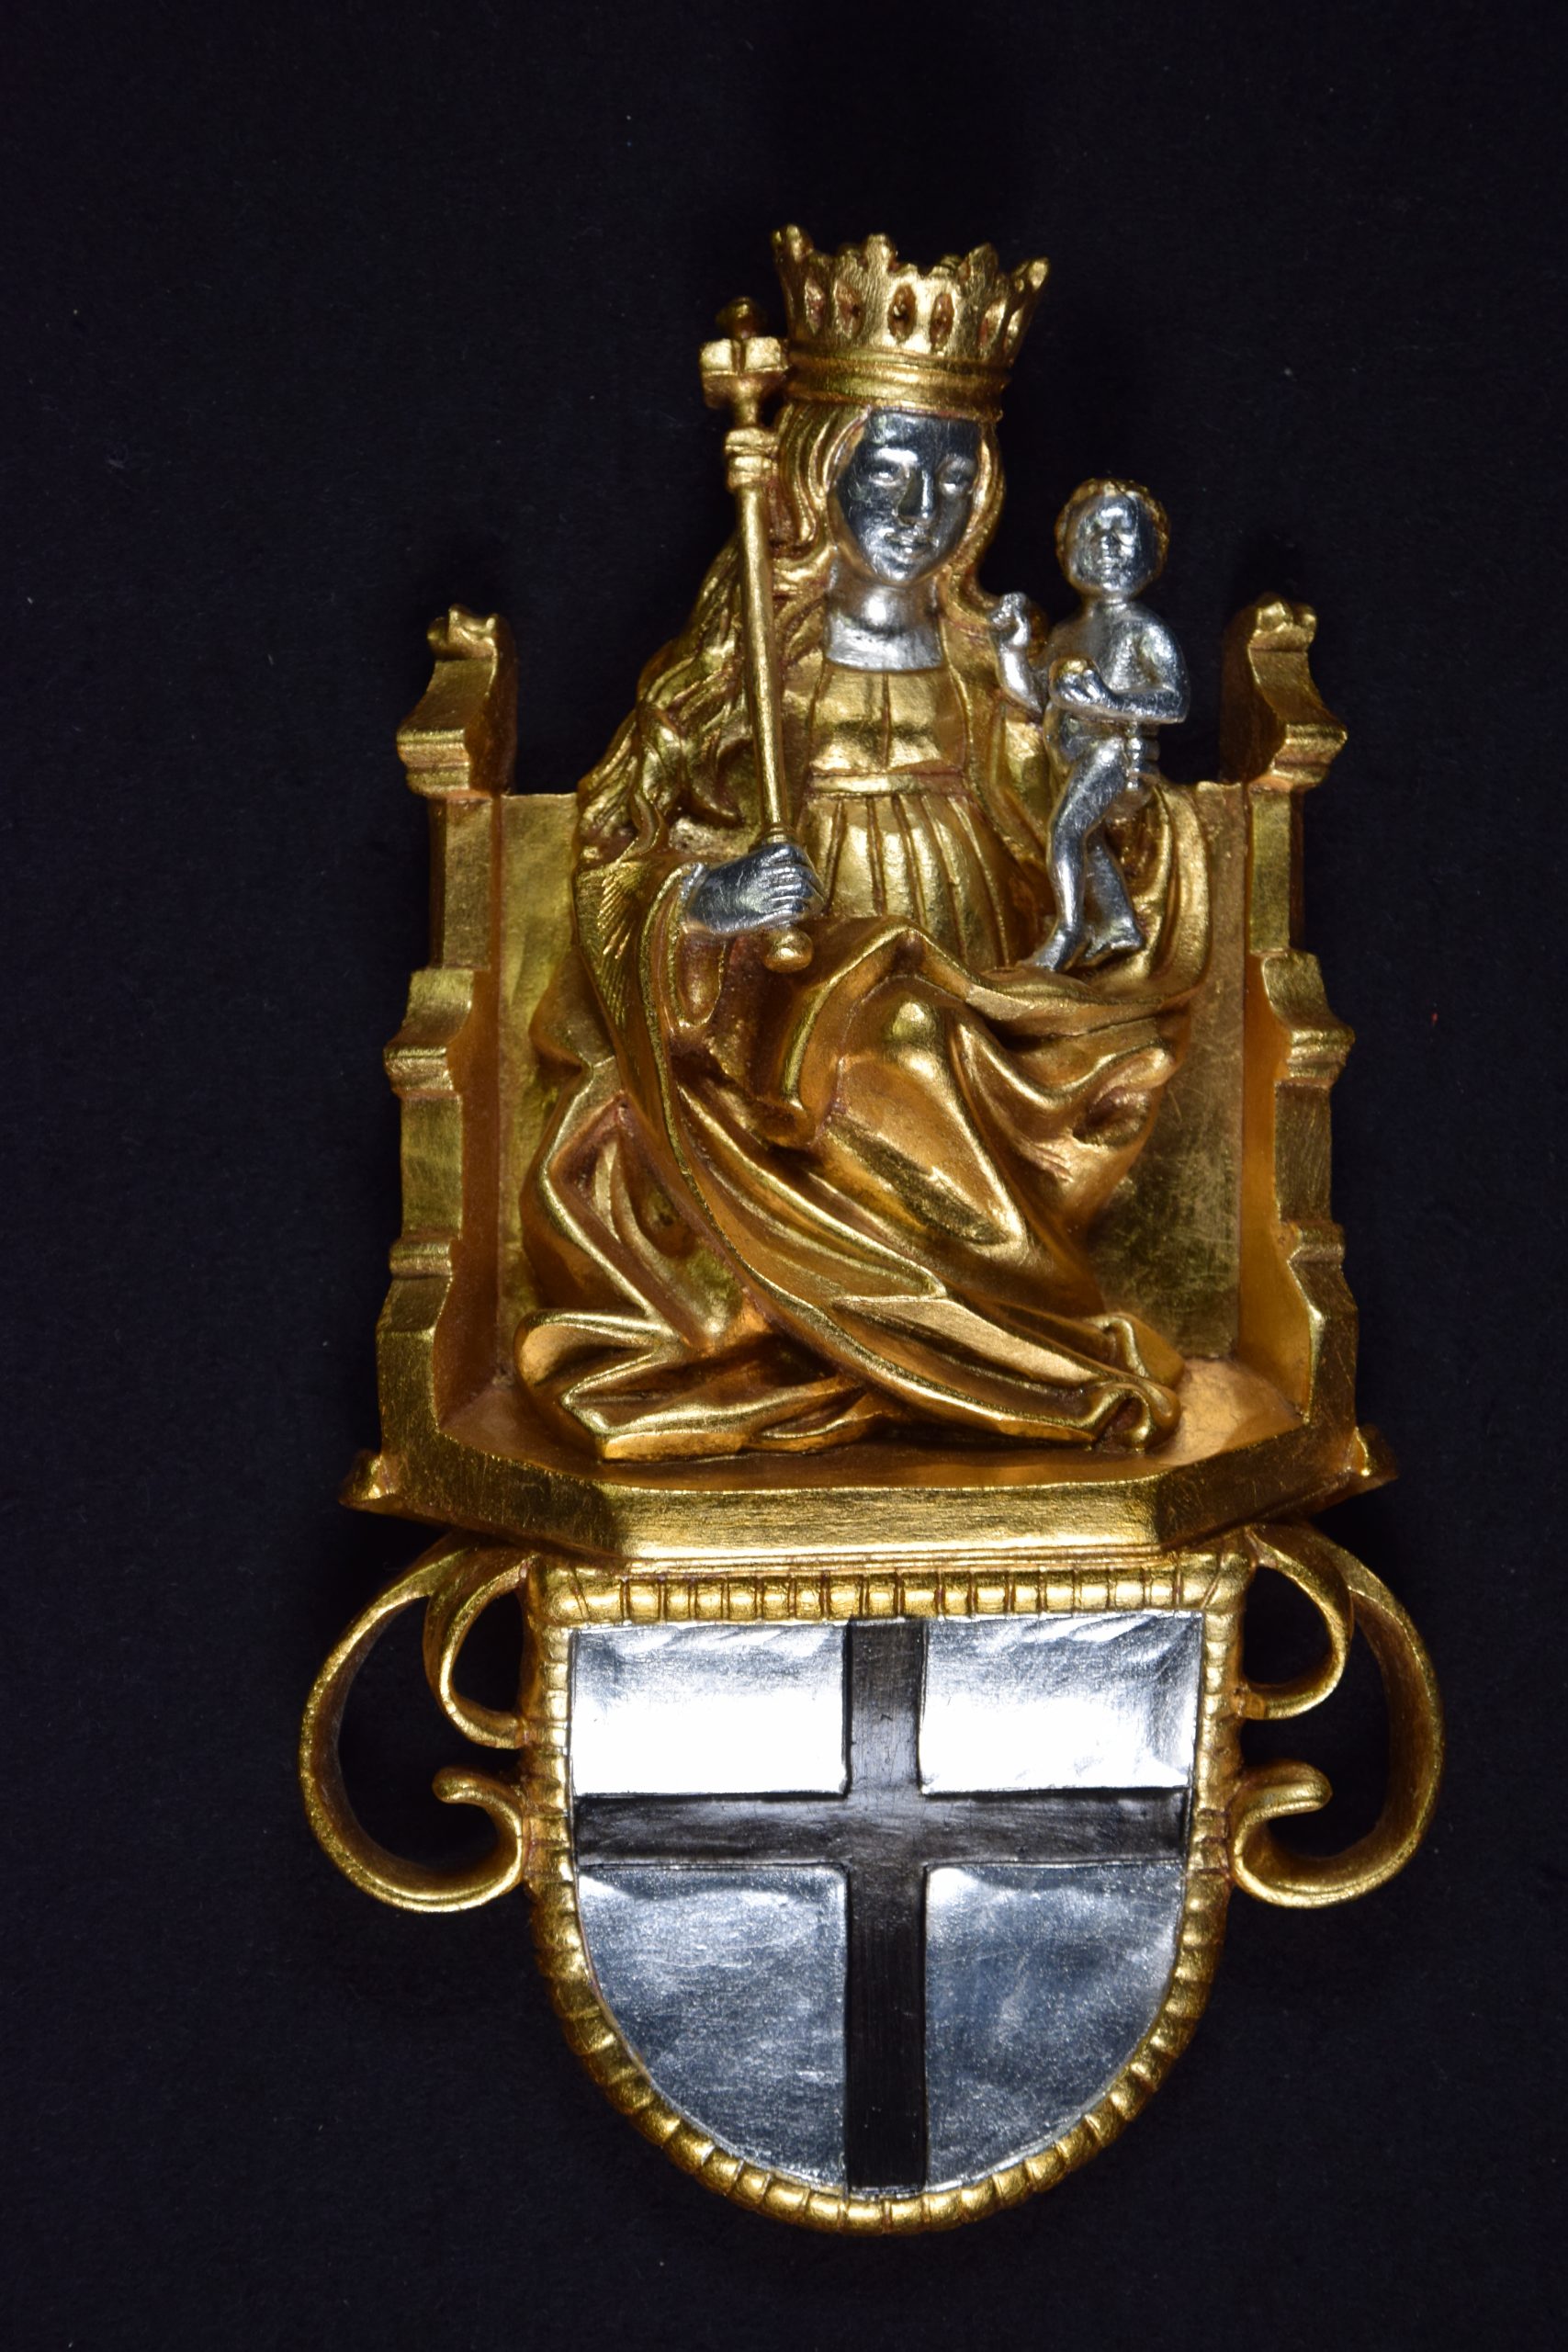 Auf dem Bild ist eine aus vergoldetem Silber abgebildete Marienfigur zu sehen, die auf einem Thron sitzend, mit gekröntem Haupt, Zepter in der rechten Hand und dem Jesuskind auf dem linken Arm dargestellt ist. Unten an der Figur befindet sich das Deutschordenswappen.